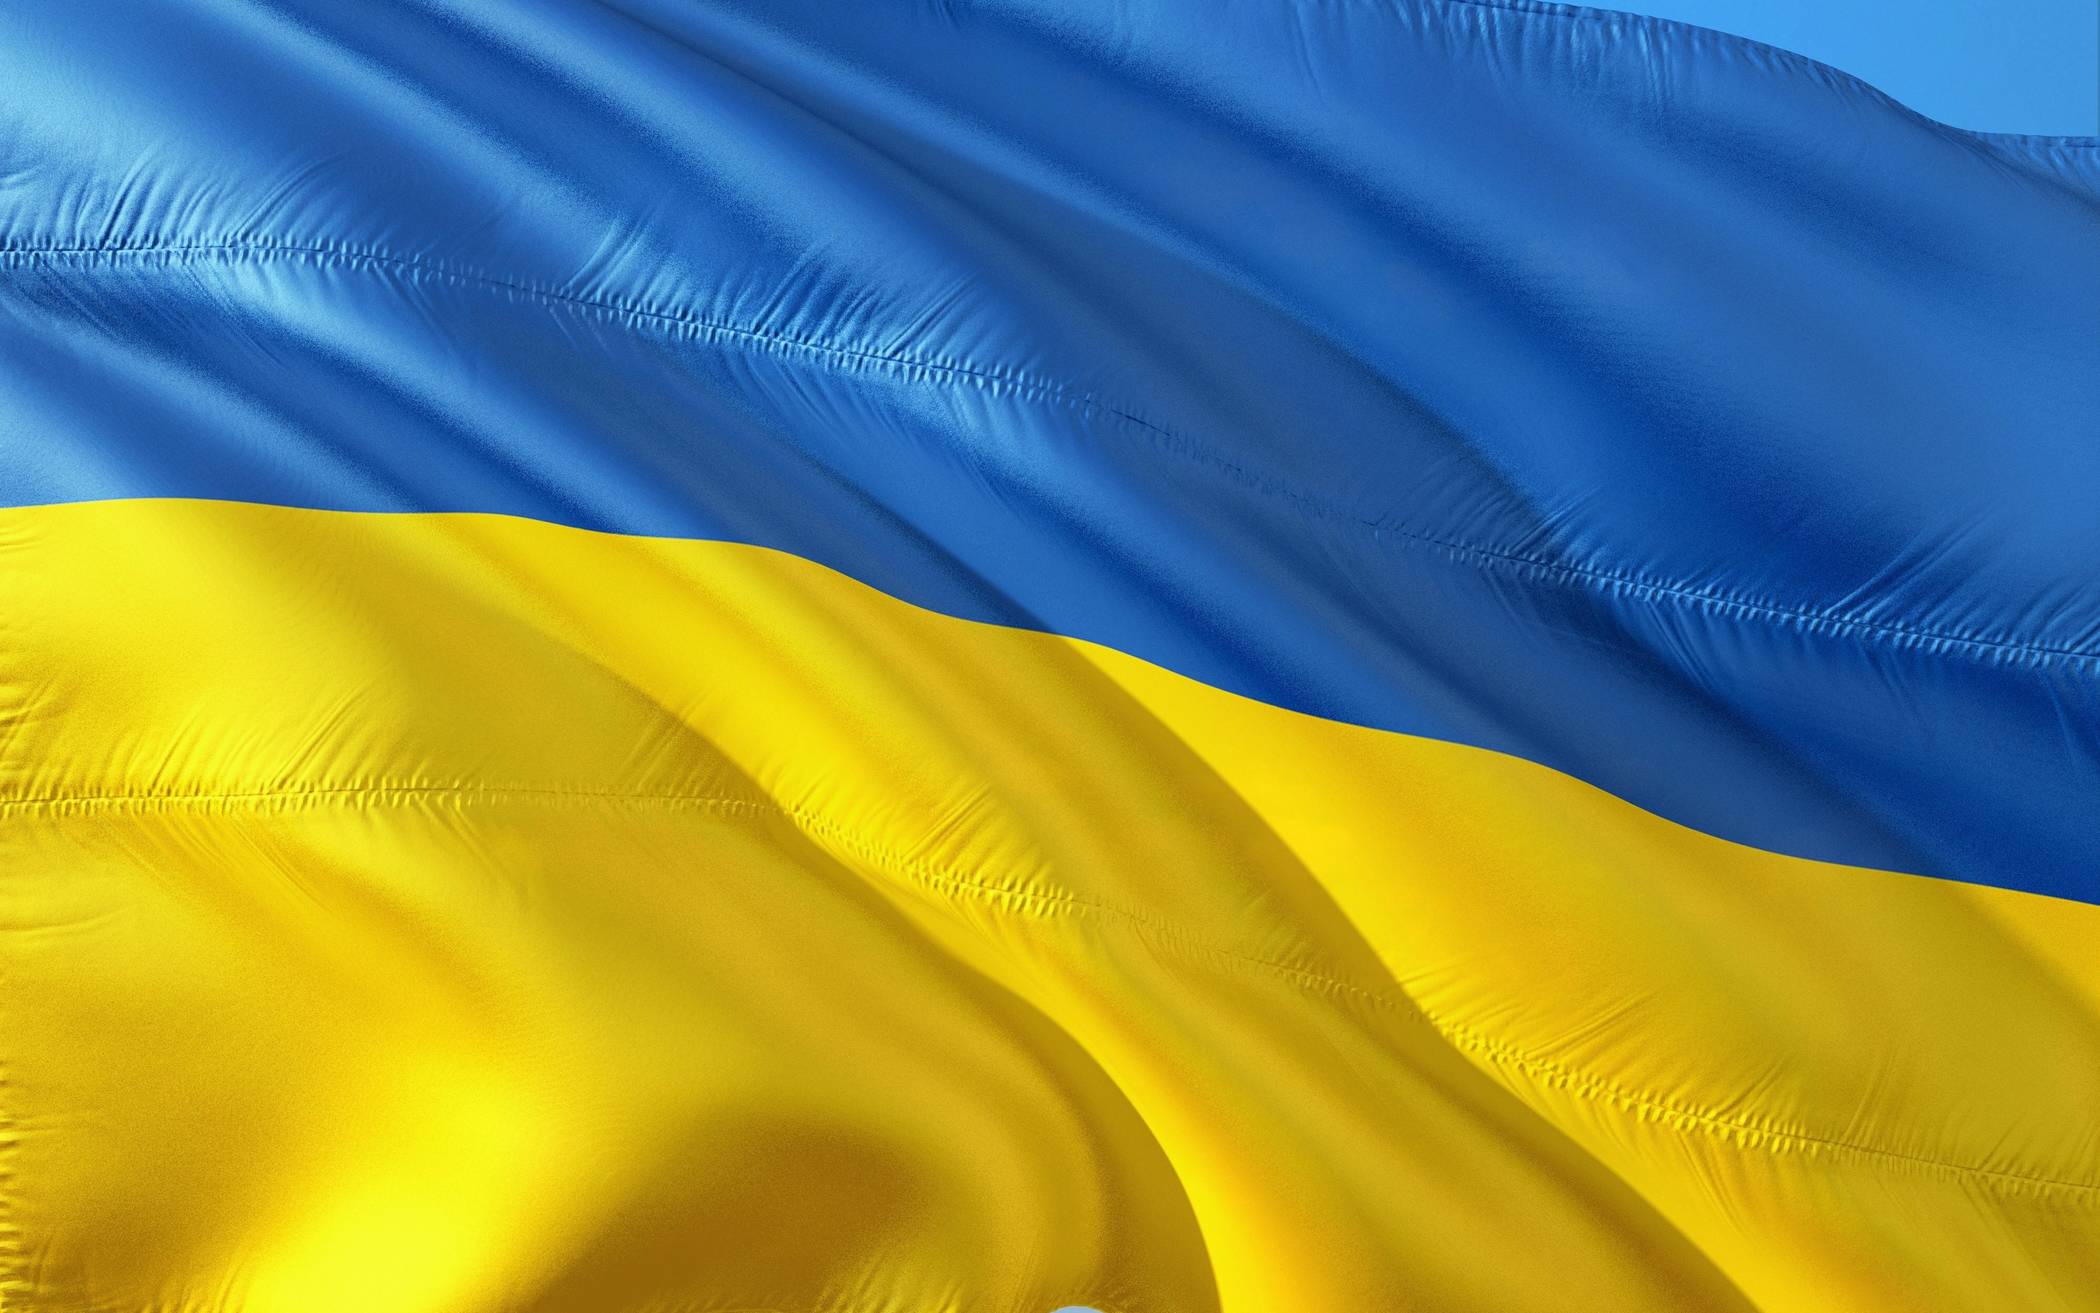 Krieg in der Ukraine: Was können wir jetzt tun?